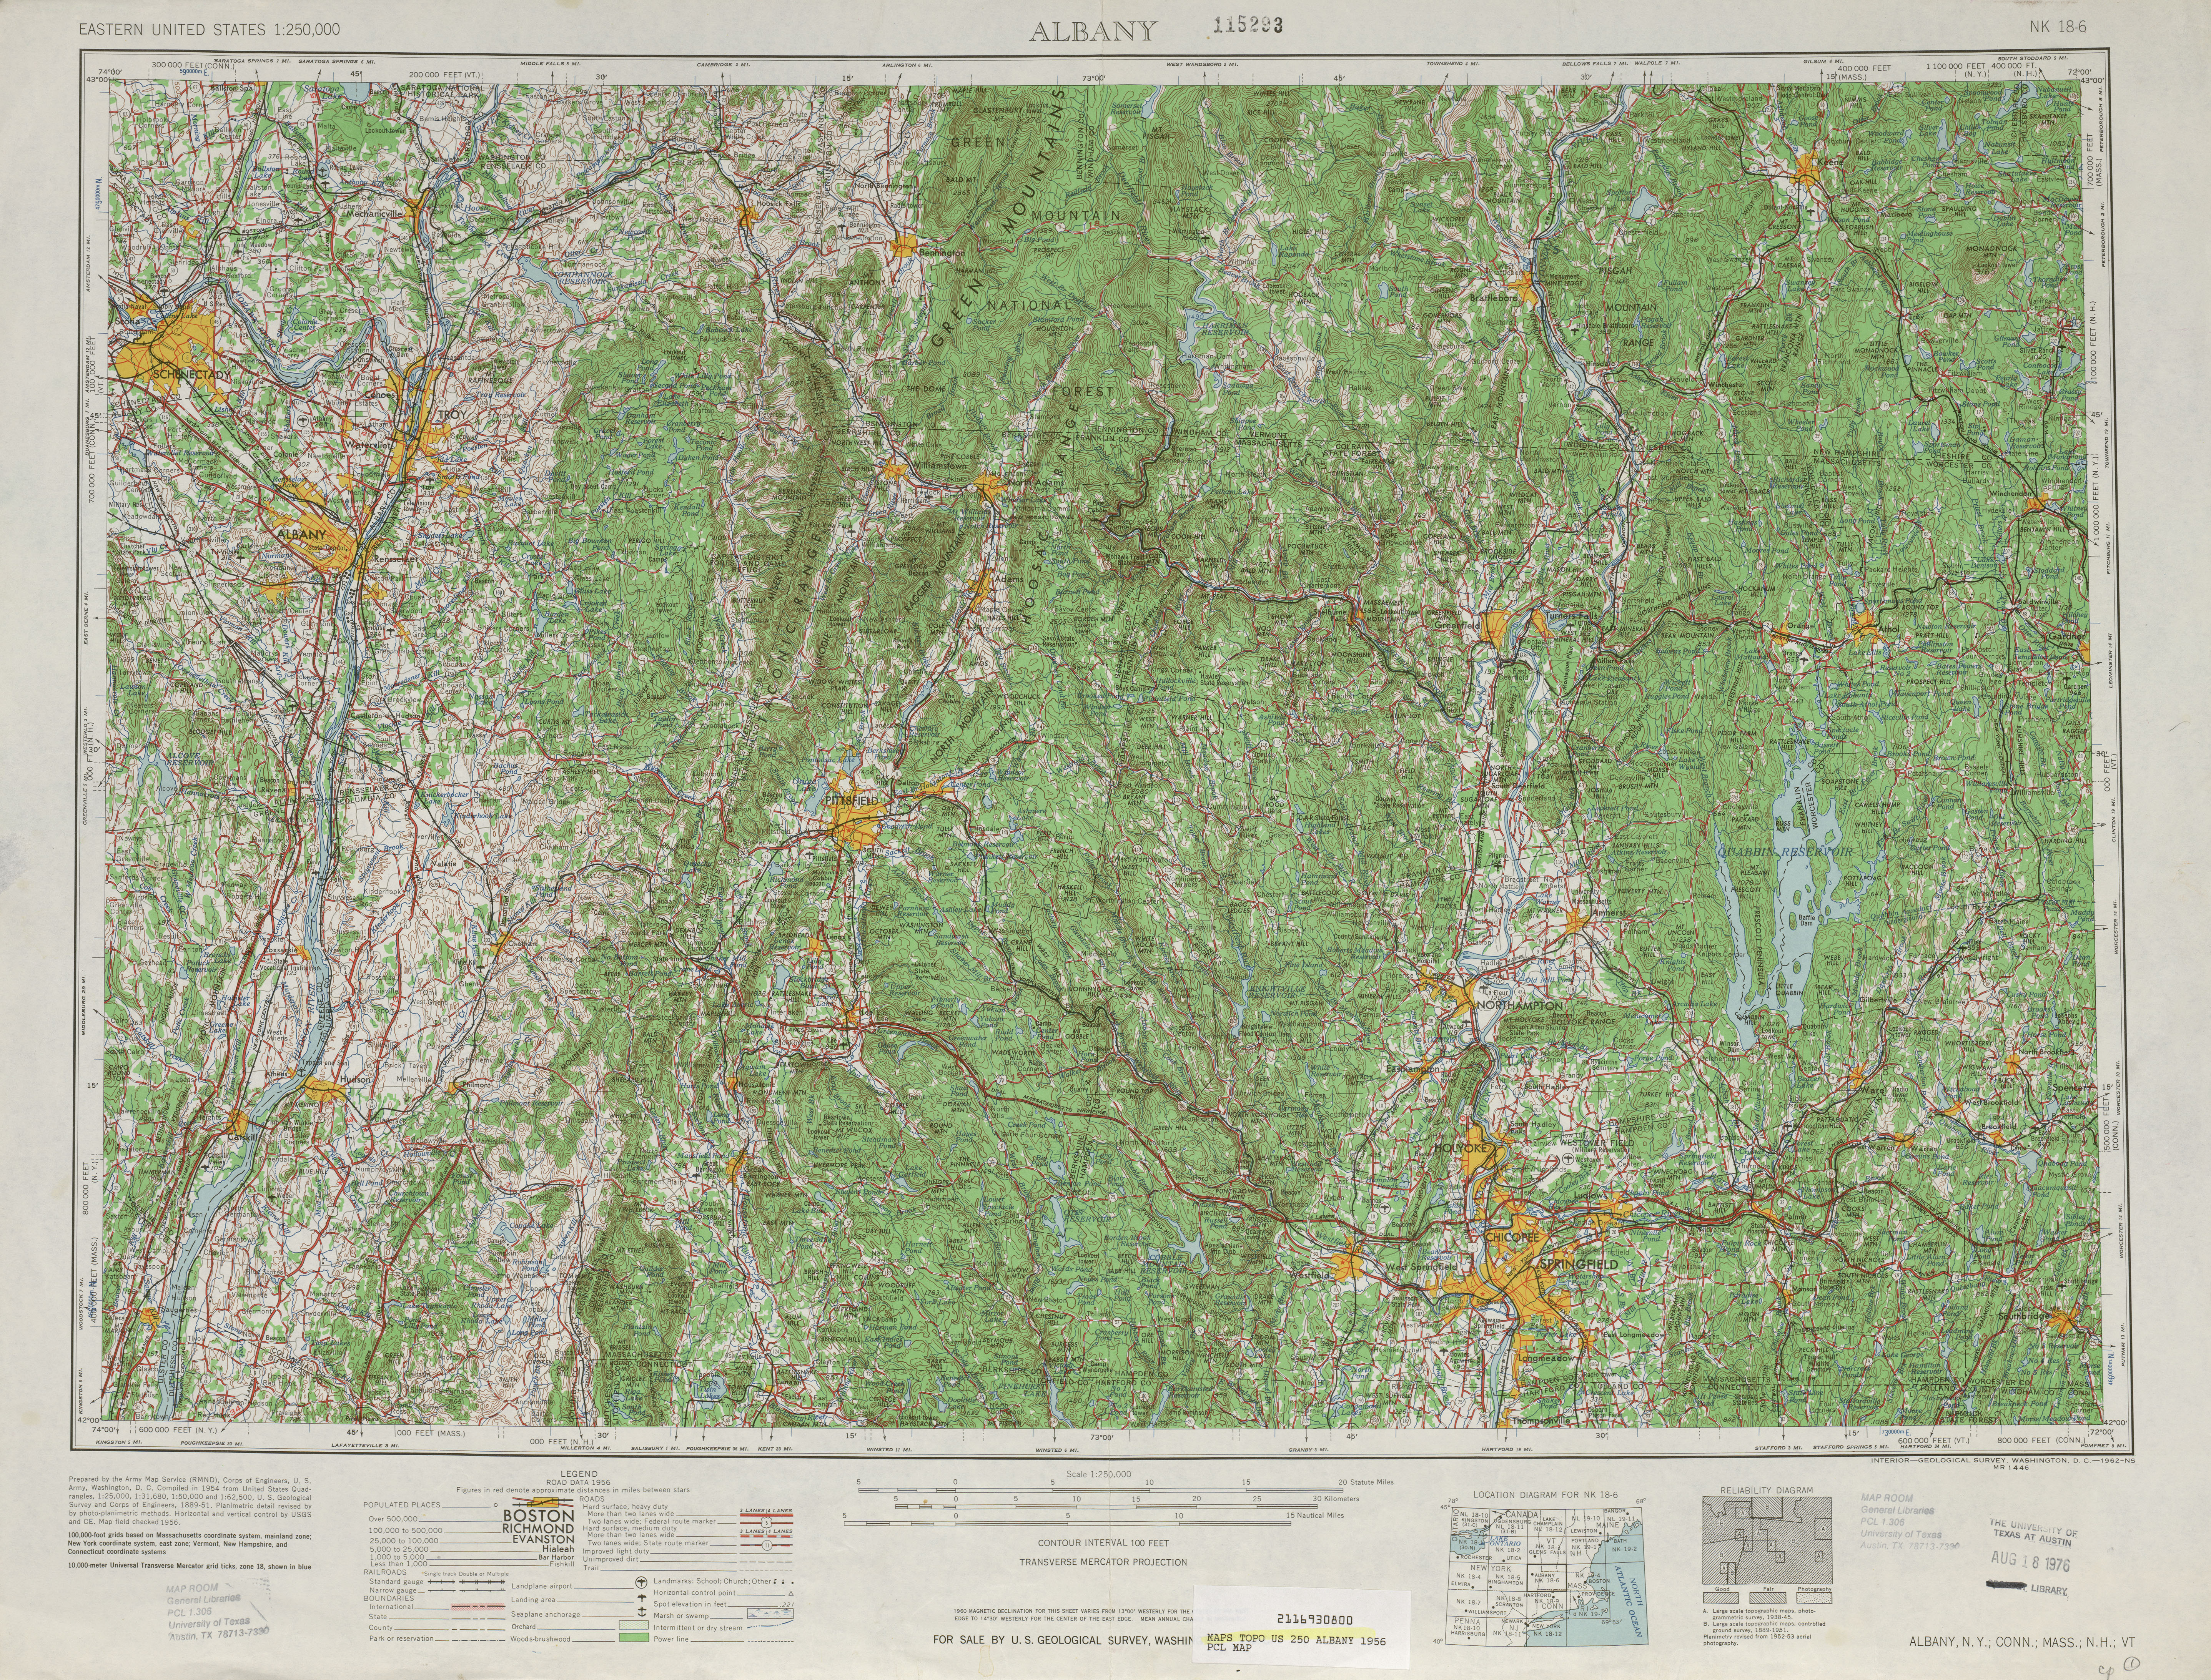 Hoja Albany del Mapa Topográfico de los Estados Unidos 1956